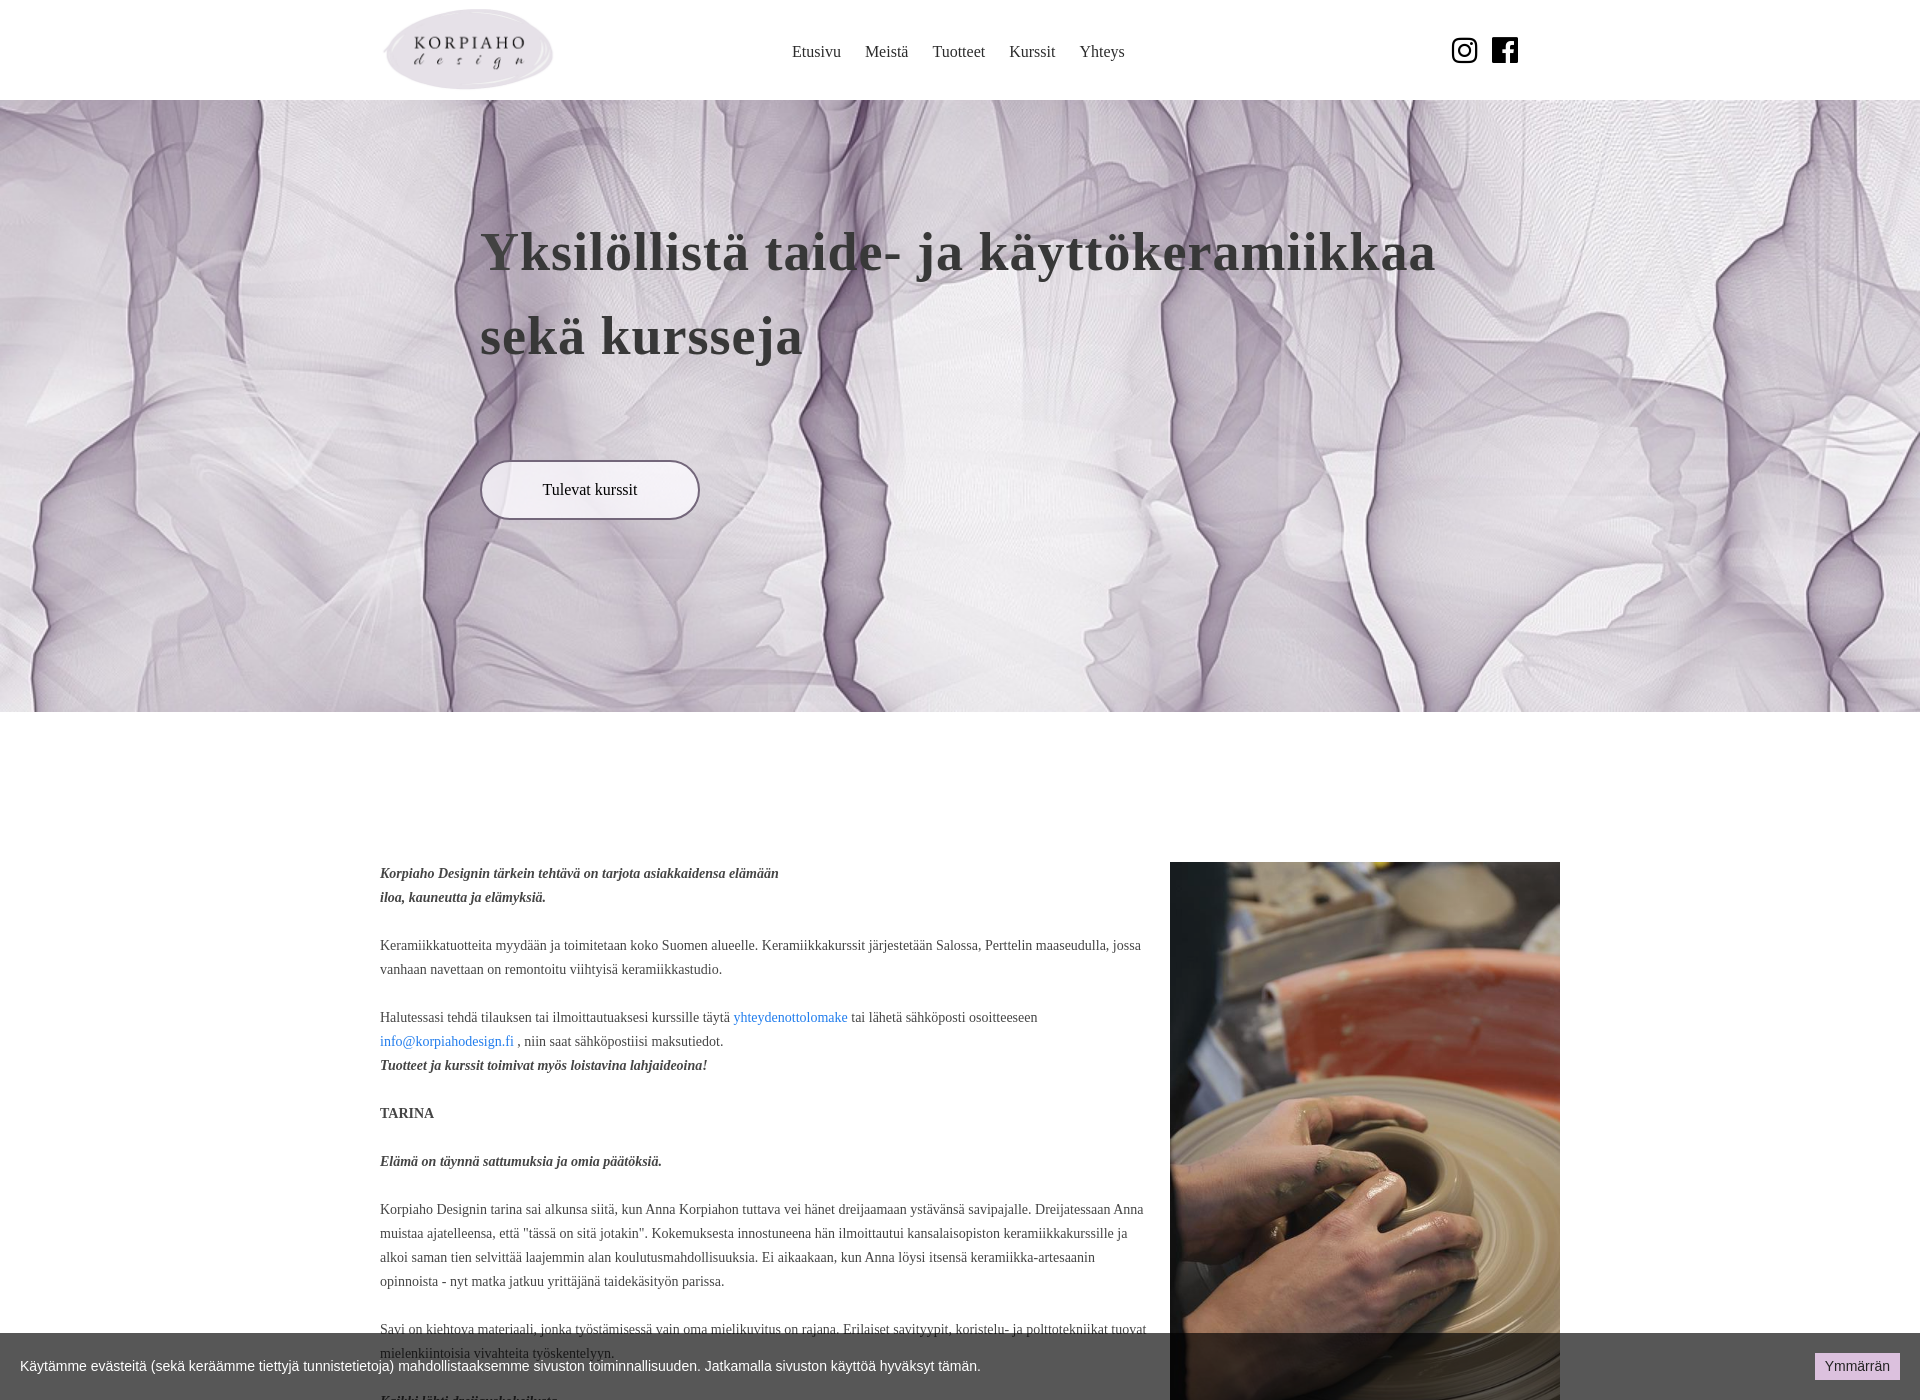 Näyttökuva korpiahodesign.fi